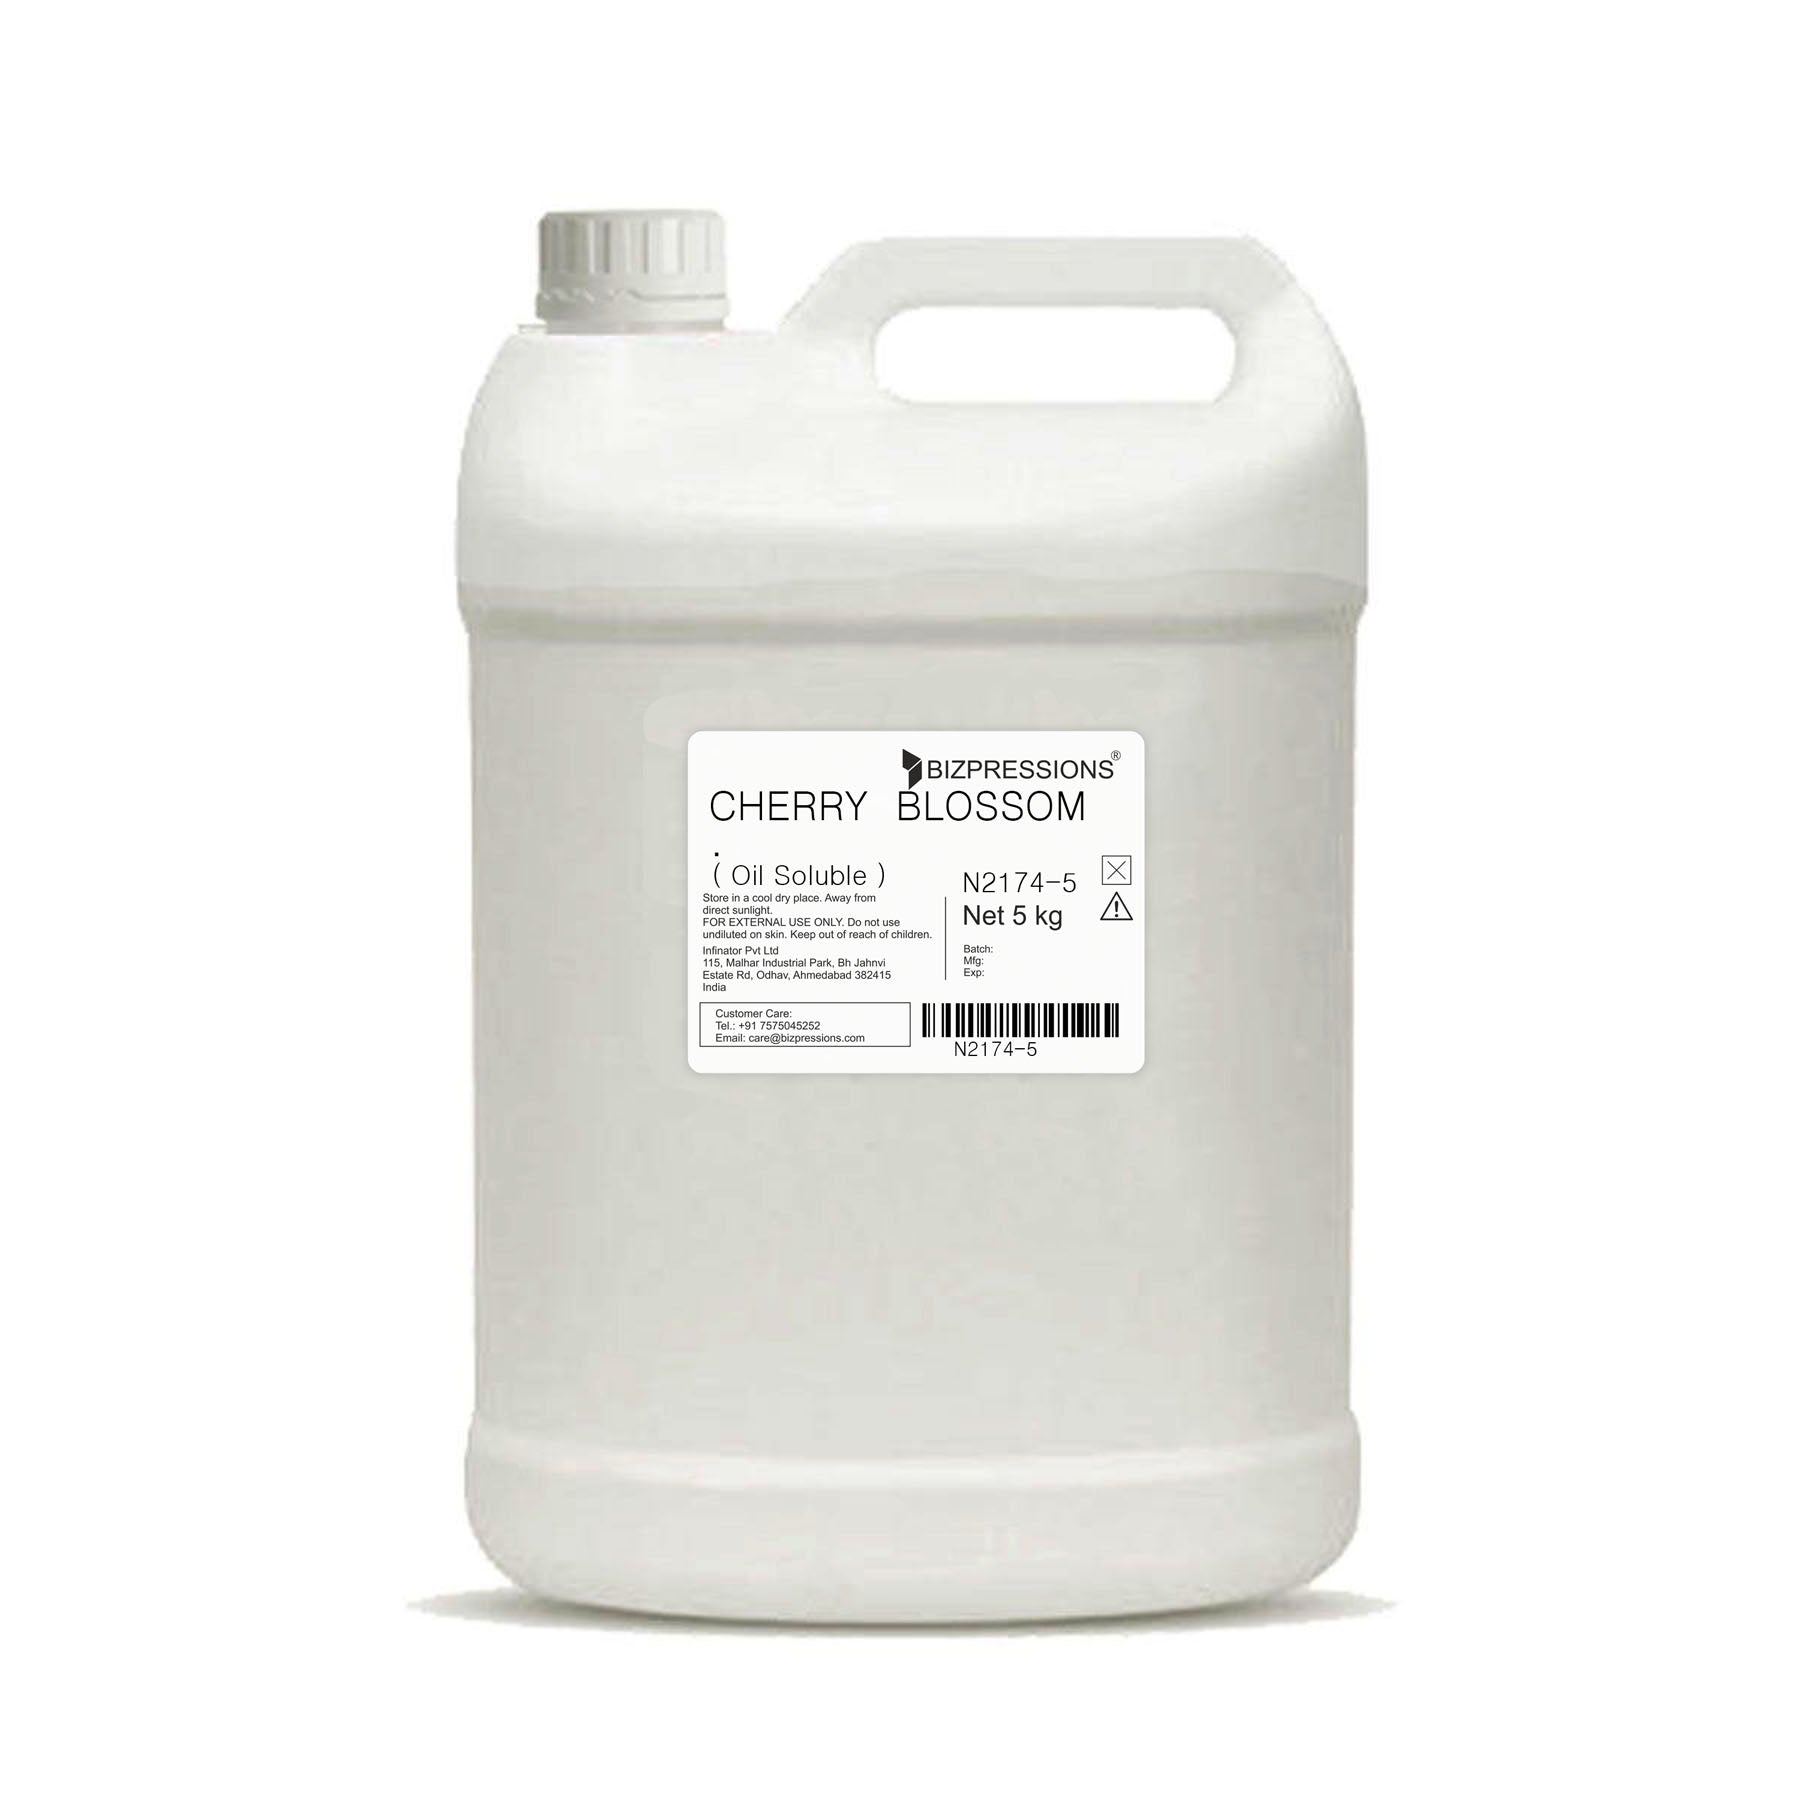 CHERRY BLOSSOM - Fragrance ( Oil Soluble ) - 5 kg